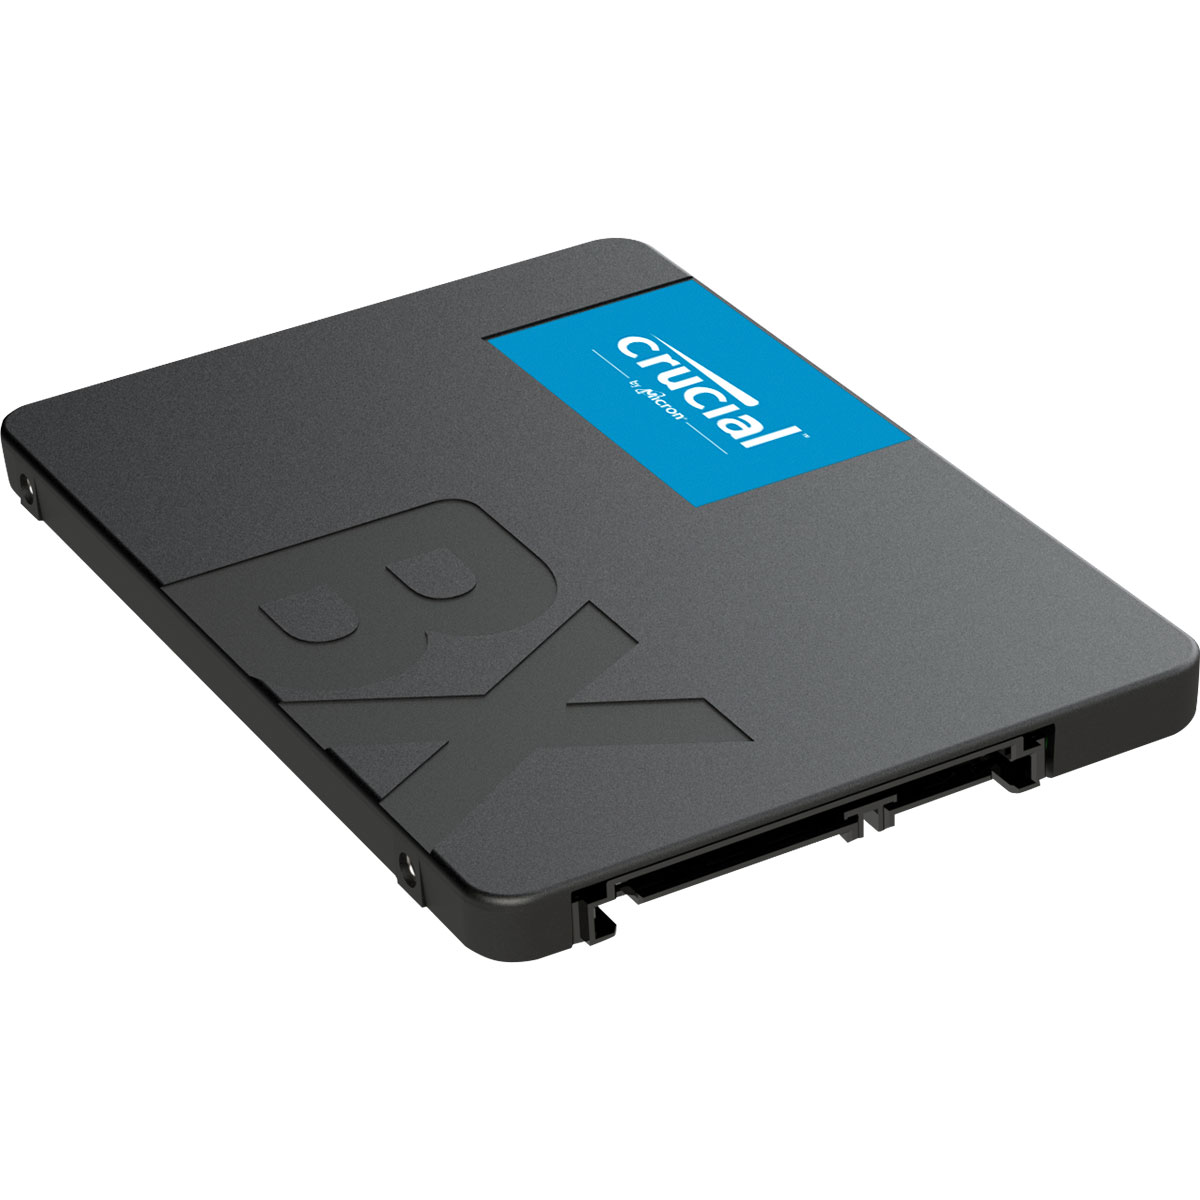 Disque dur SSD Crucial BX500 2To 2.5 pouces (7mm) Serial ATA 3 (6Gb/s)s, informatique ile de la Runion 974